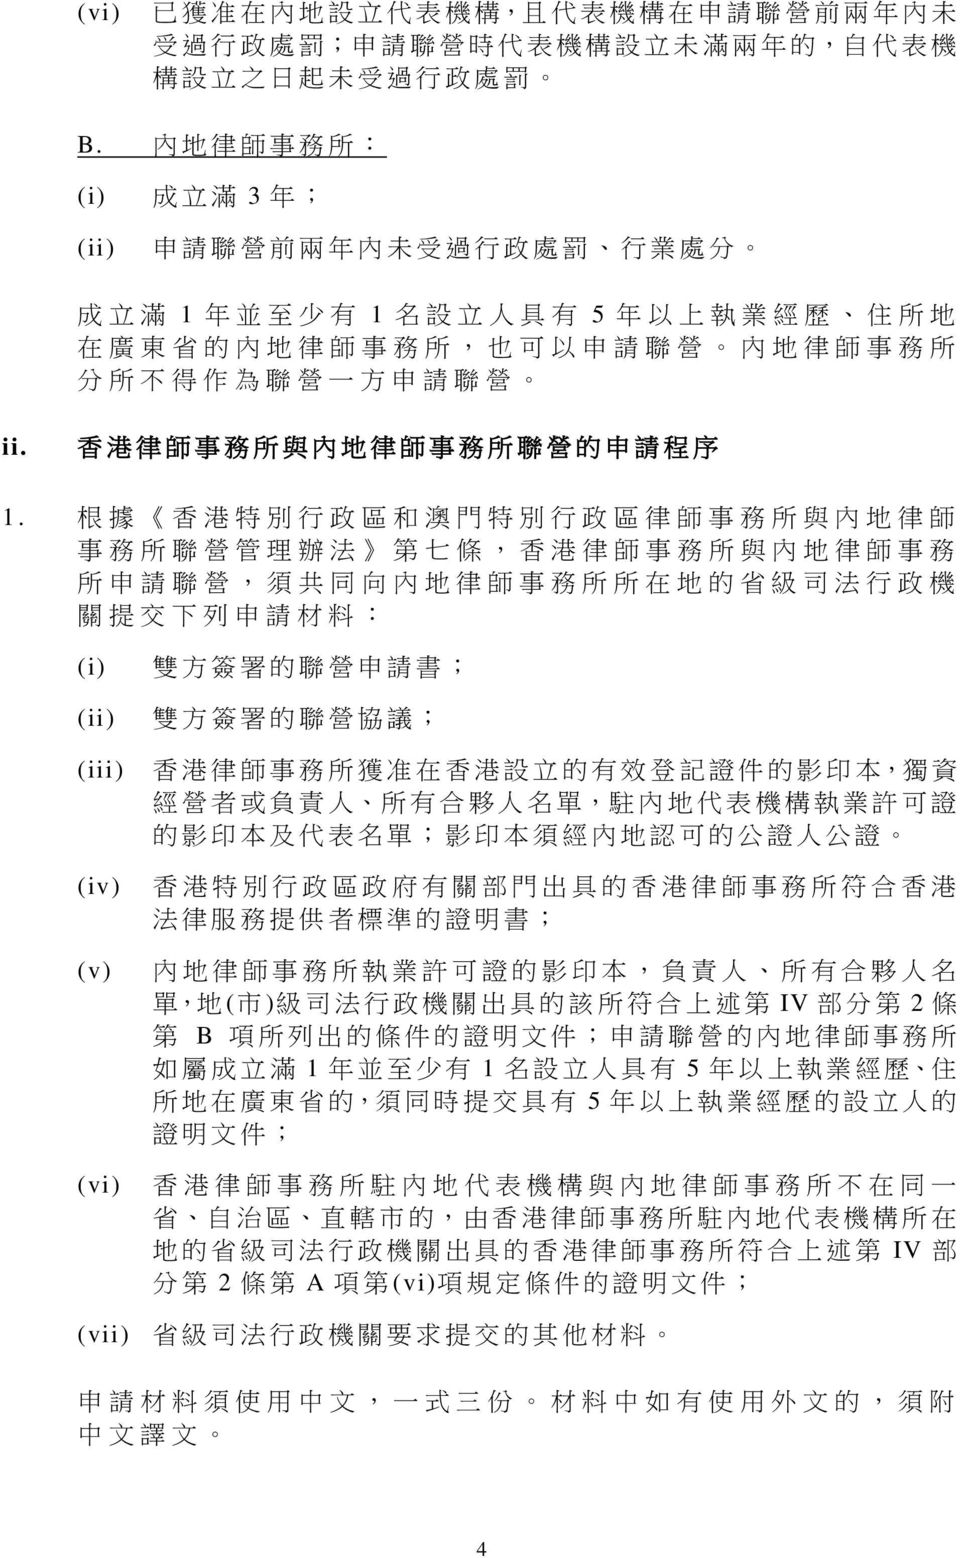 方 申 請 聯 營 ii. 香 港 律 師 事 務 所 與 內 地 律 師 事 務 所 聯 營 的 申 請 程 序 1.